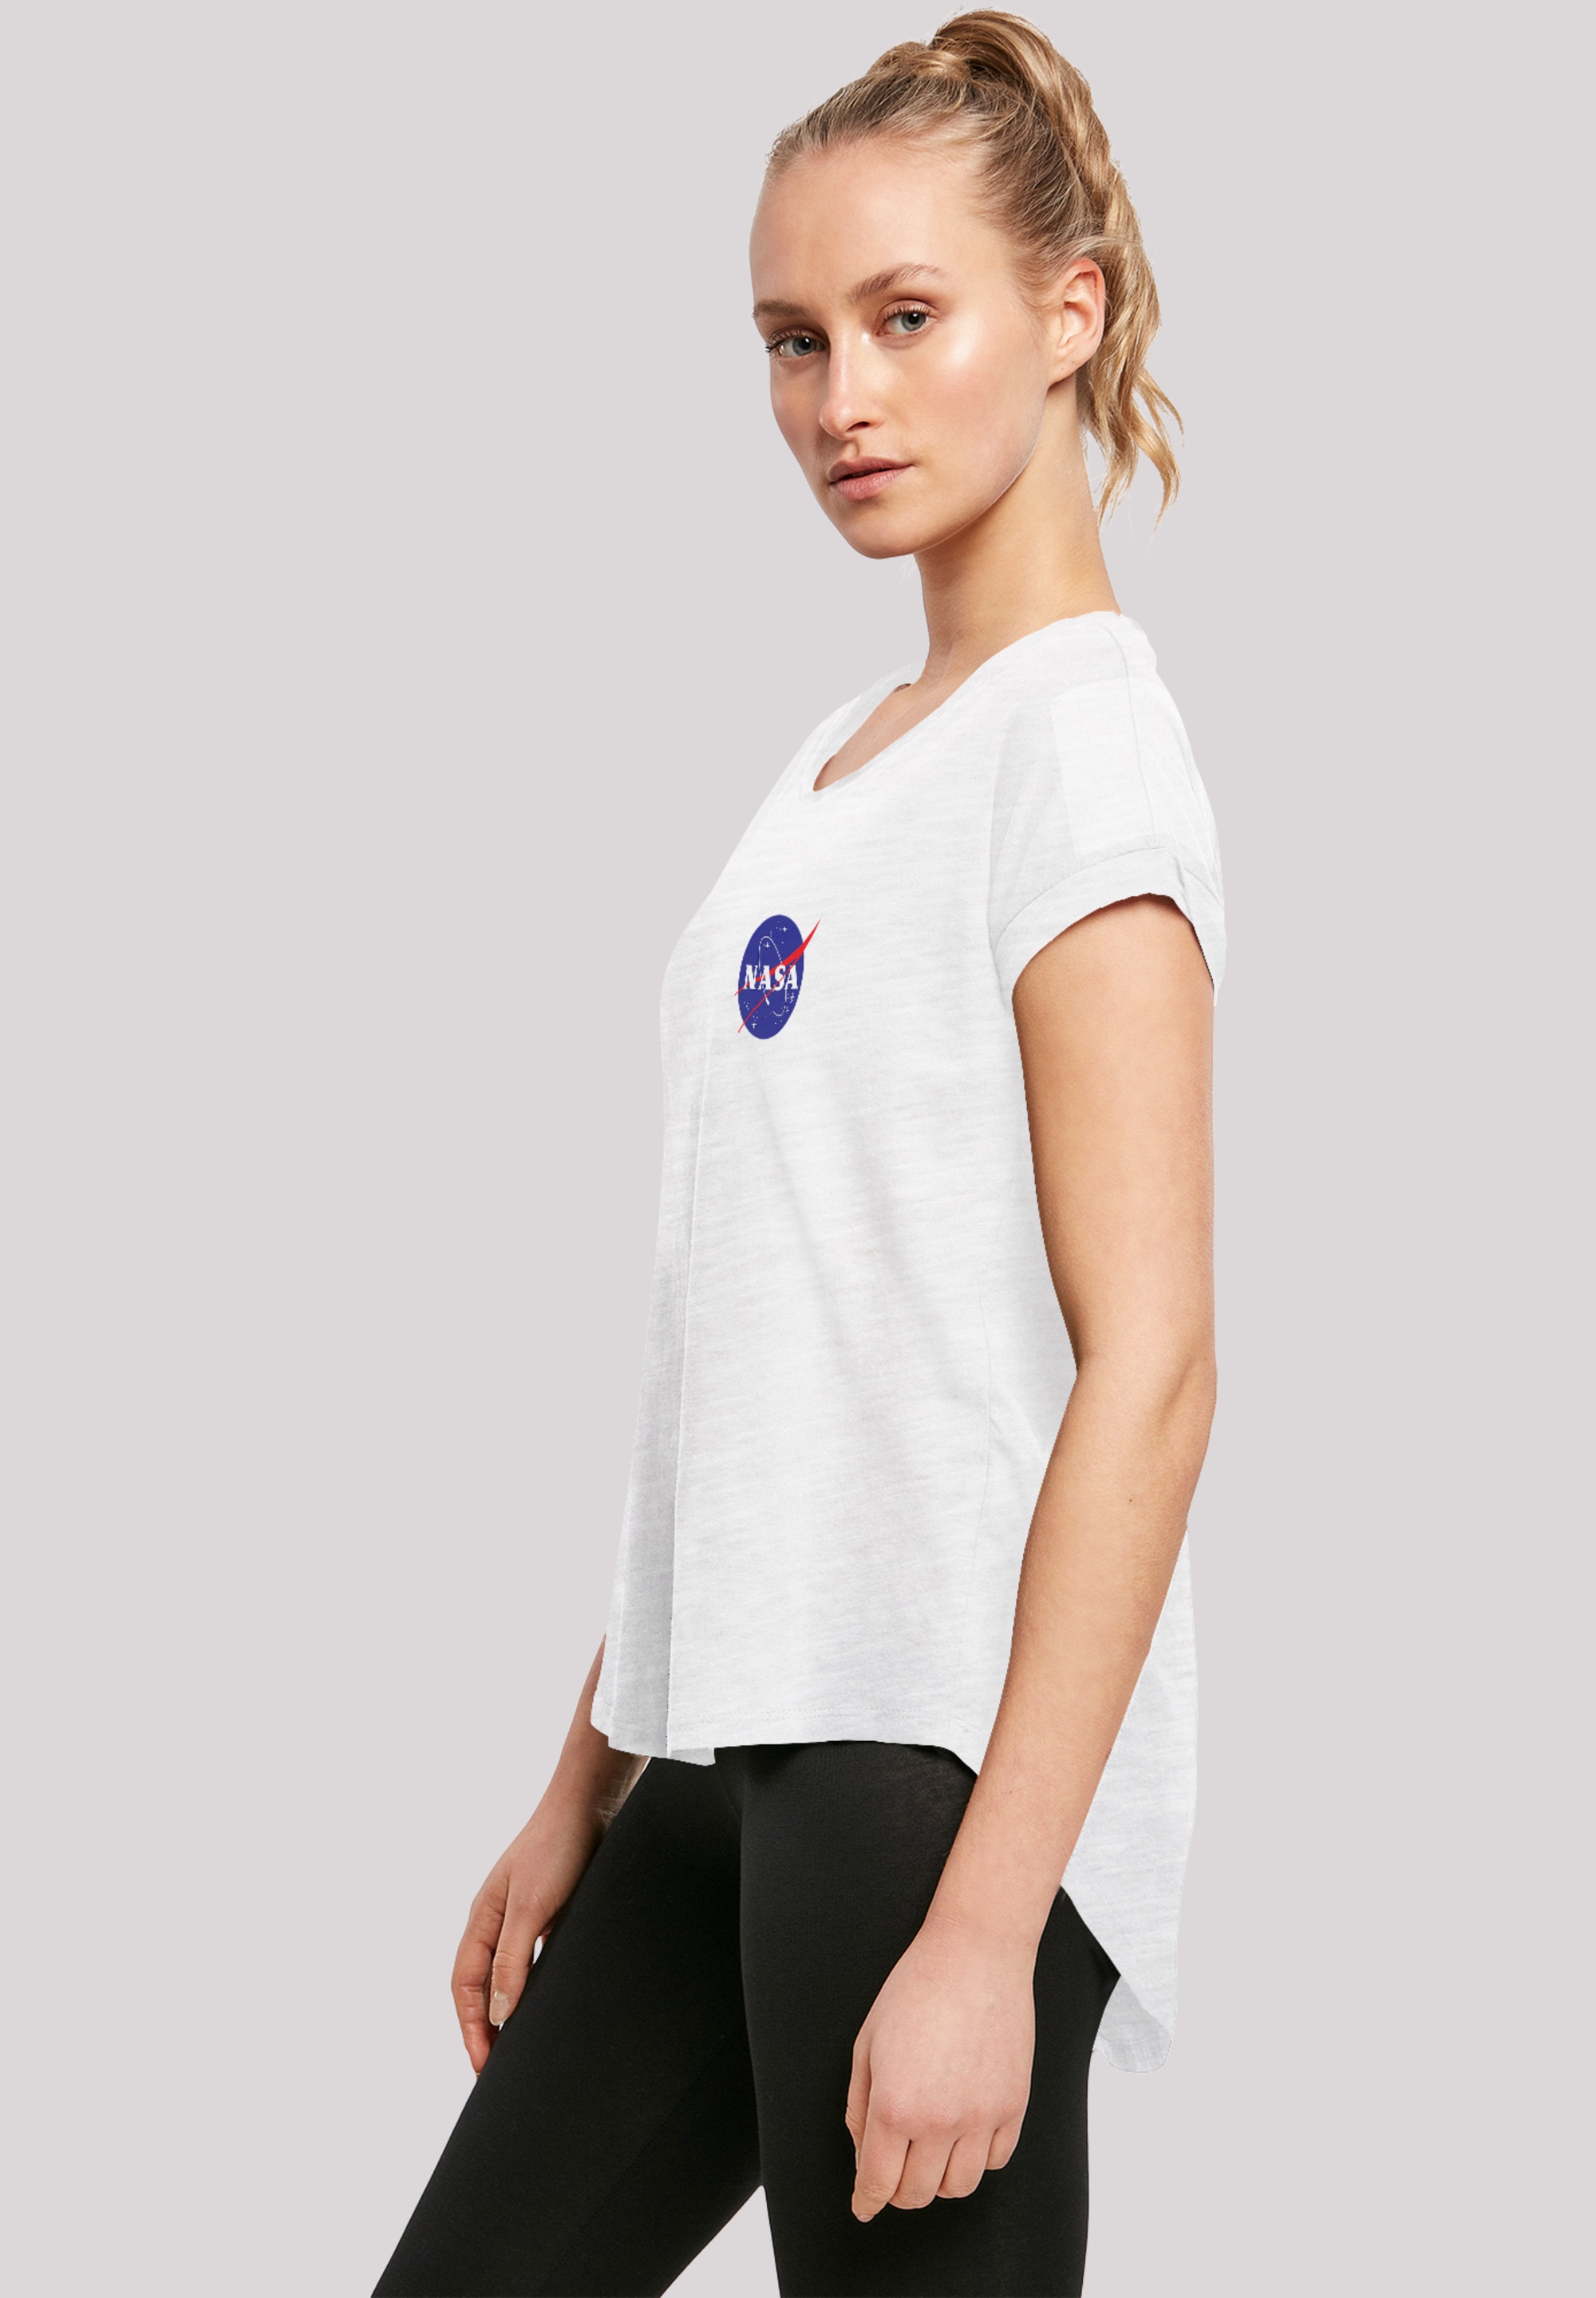 F4NT4STIC T-Shirt »NASA Classic Insignia Chest«, Damen,Premium Merch,Lang,Longshirt,Bedruckt